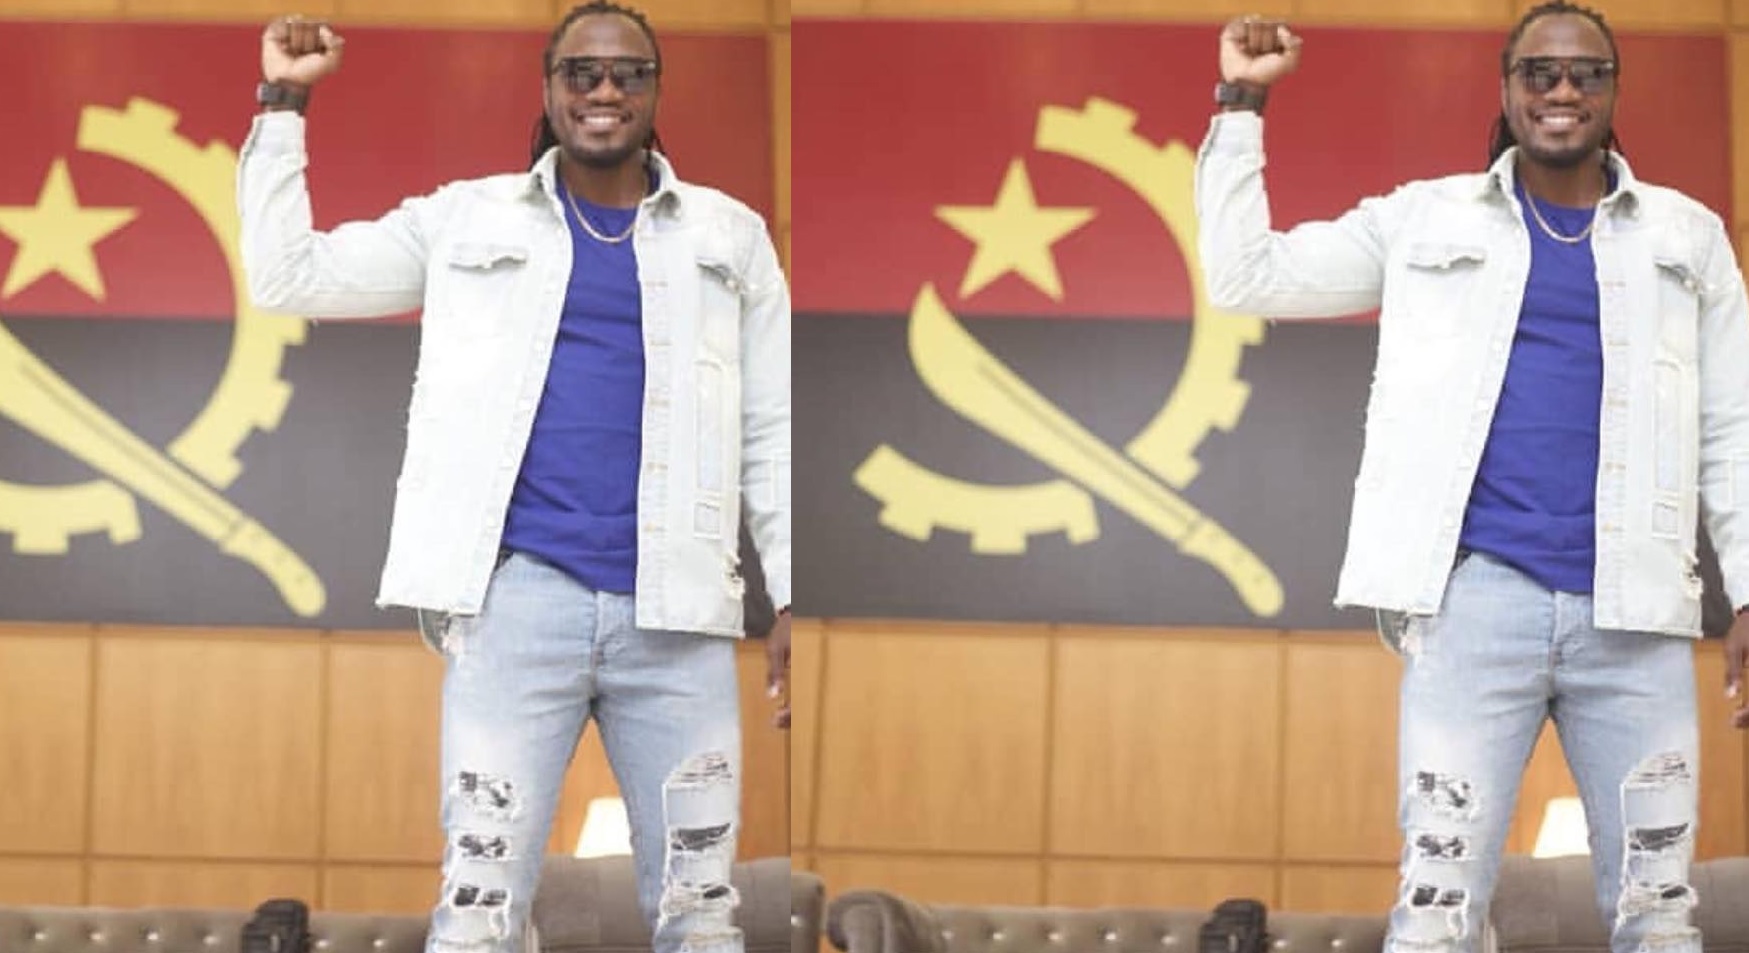 O músico moçambicano, Abuchamo Munhoto, viu seu nome recentemente envolvido em uma polémica por tirar fotografia com a bandeira de Angola